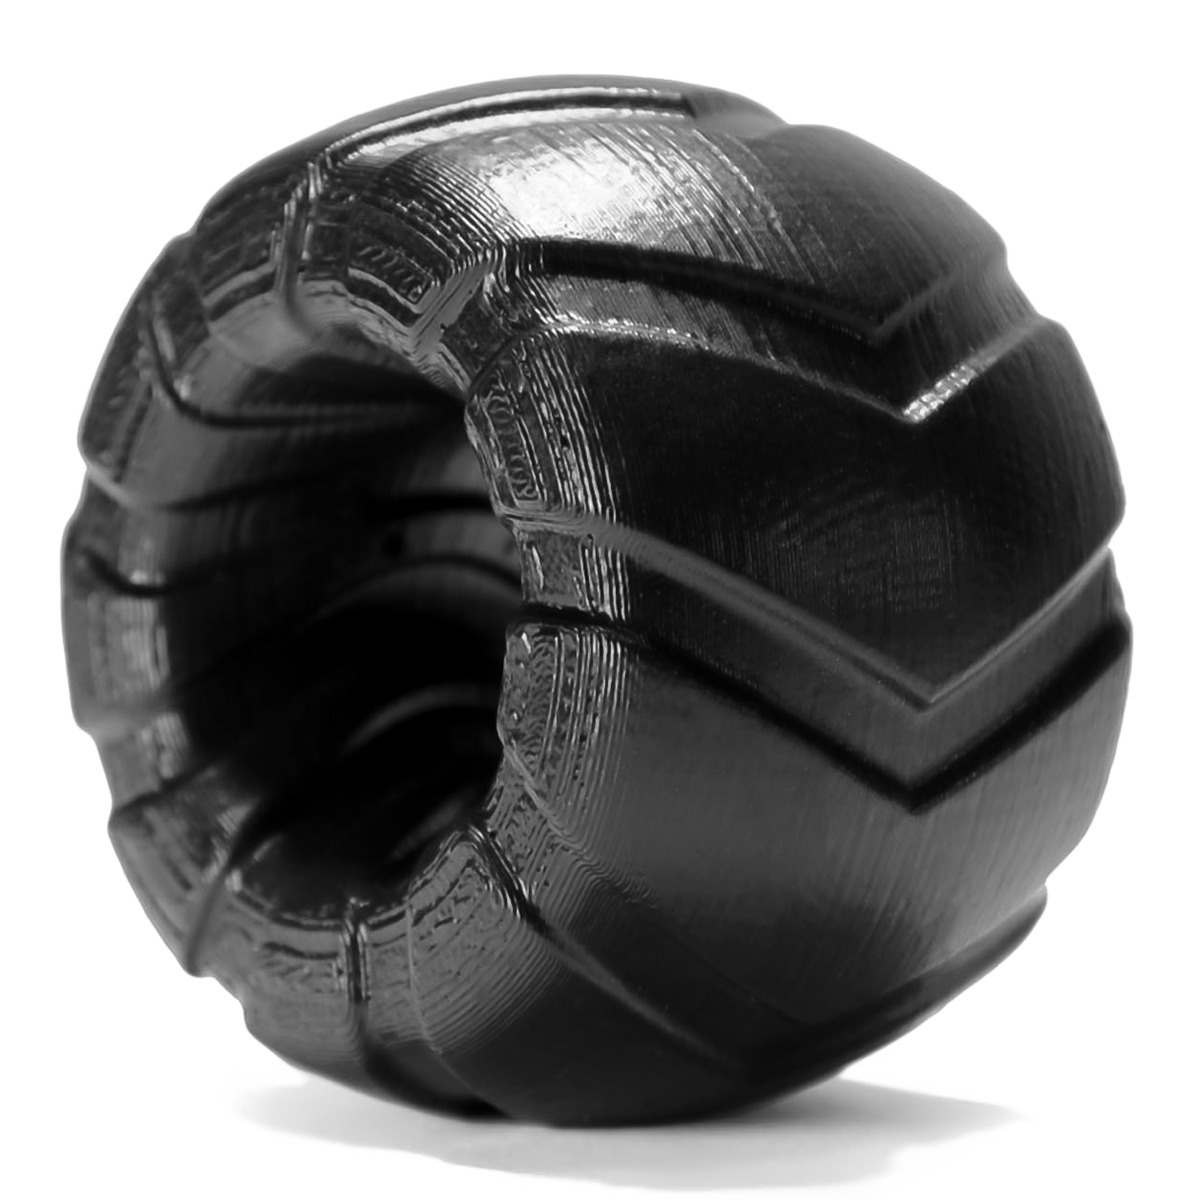 Oxballs GRINDER-1 Ballstretcher Black